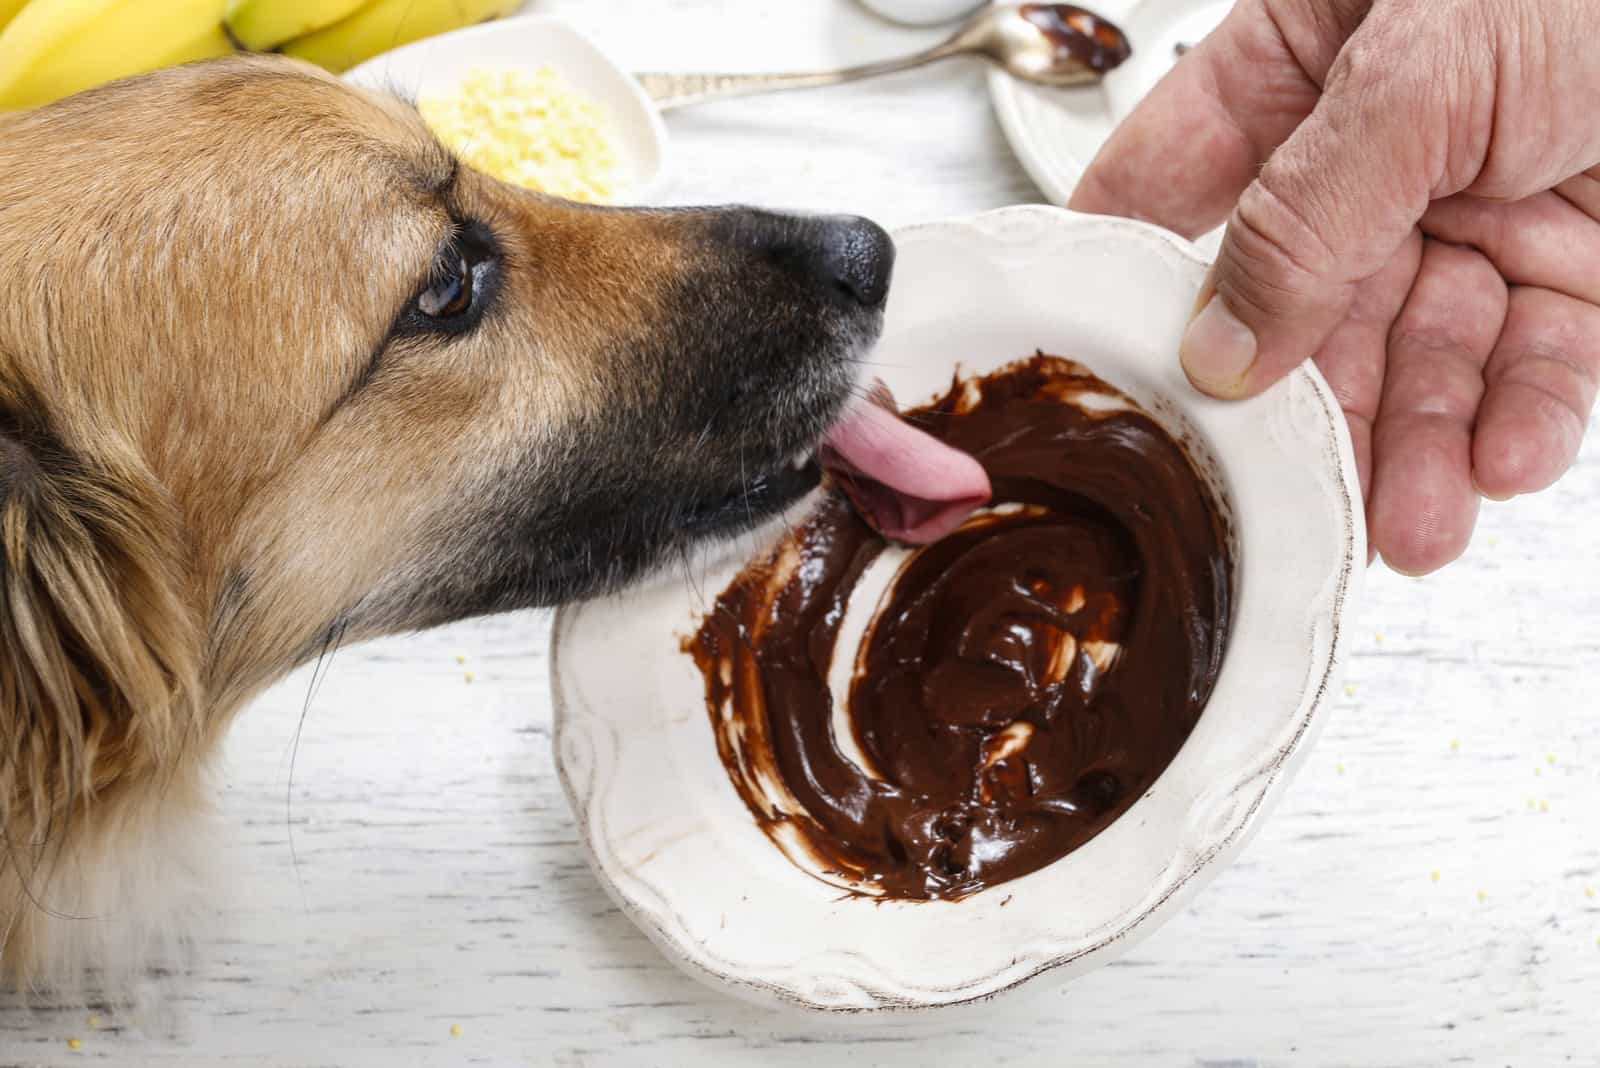 Der Hund leckt die geschmolzene Schokolade von einem Teller, den ein Mann in der Hand hält